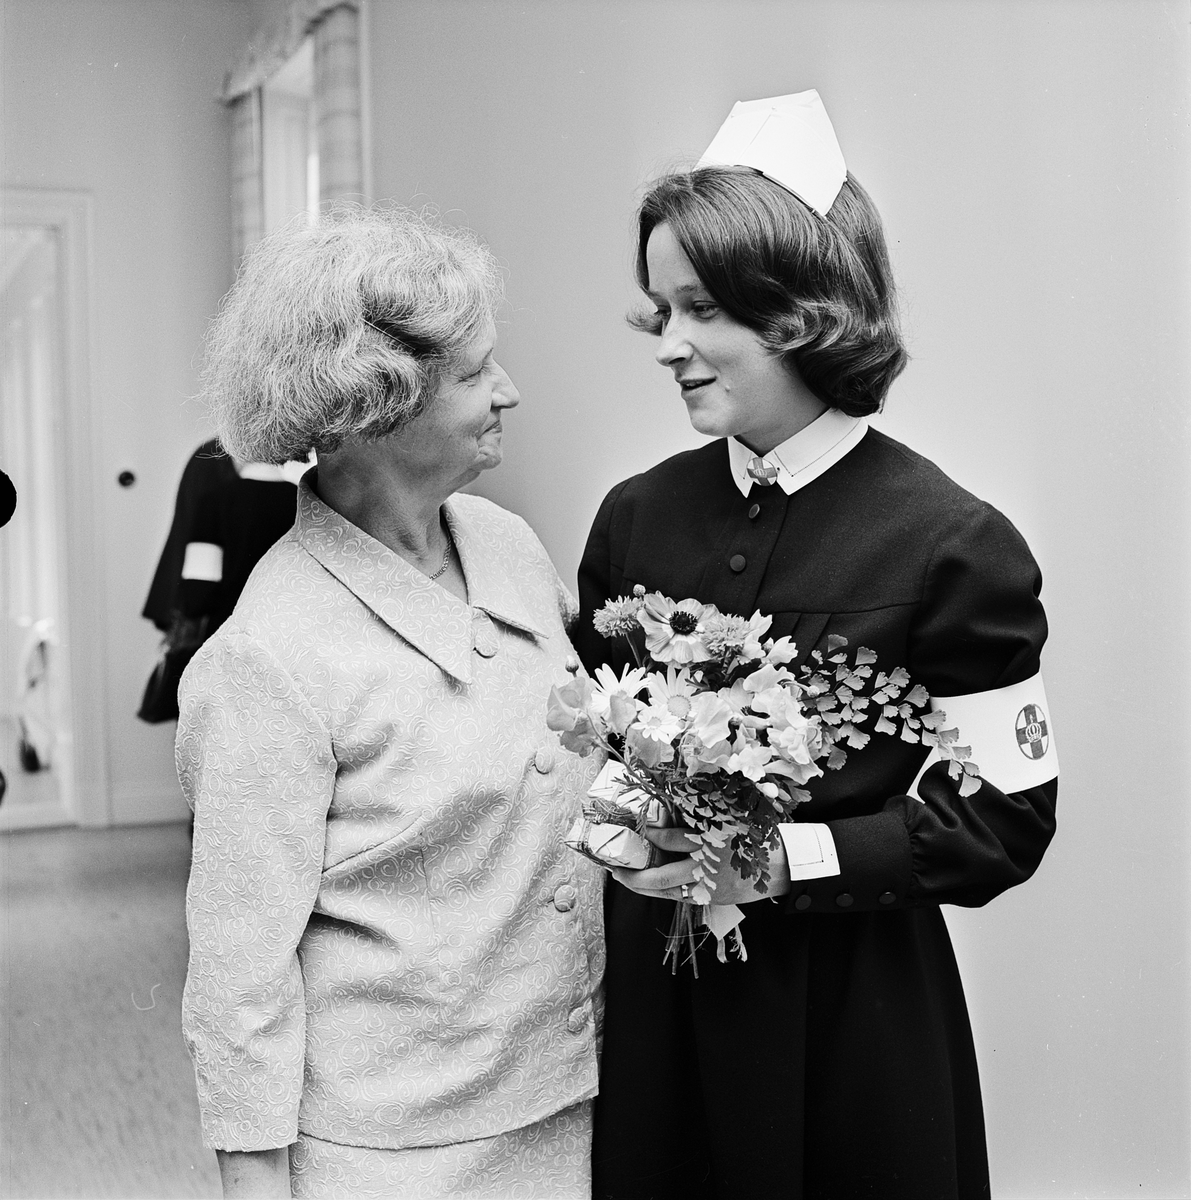 Nya skötare på Ulleråker, Uppsala 1965